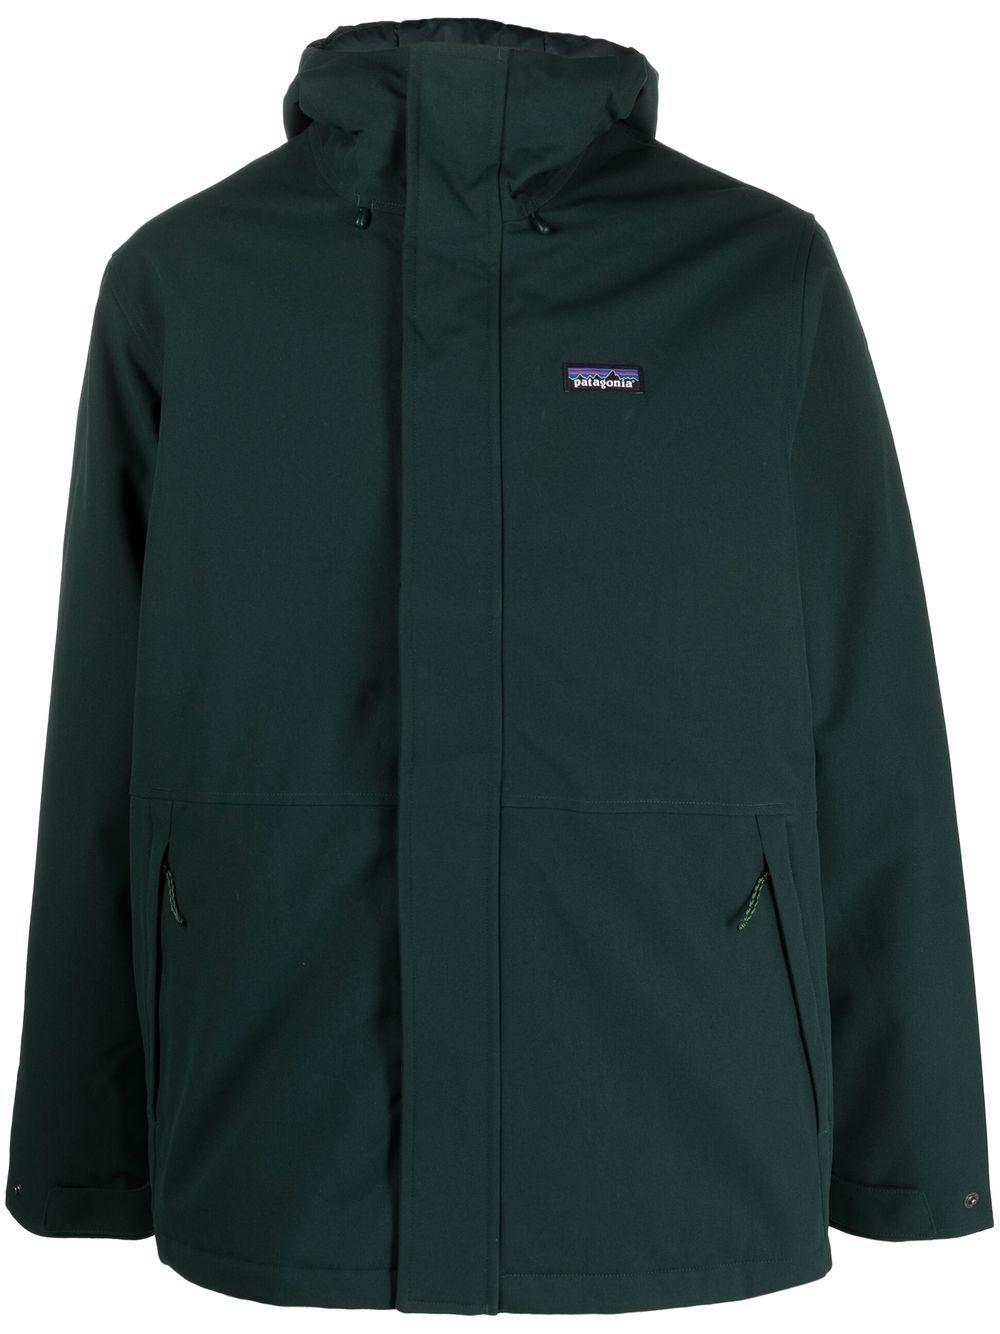 Patagonia logo print jacket | Smart Closet